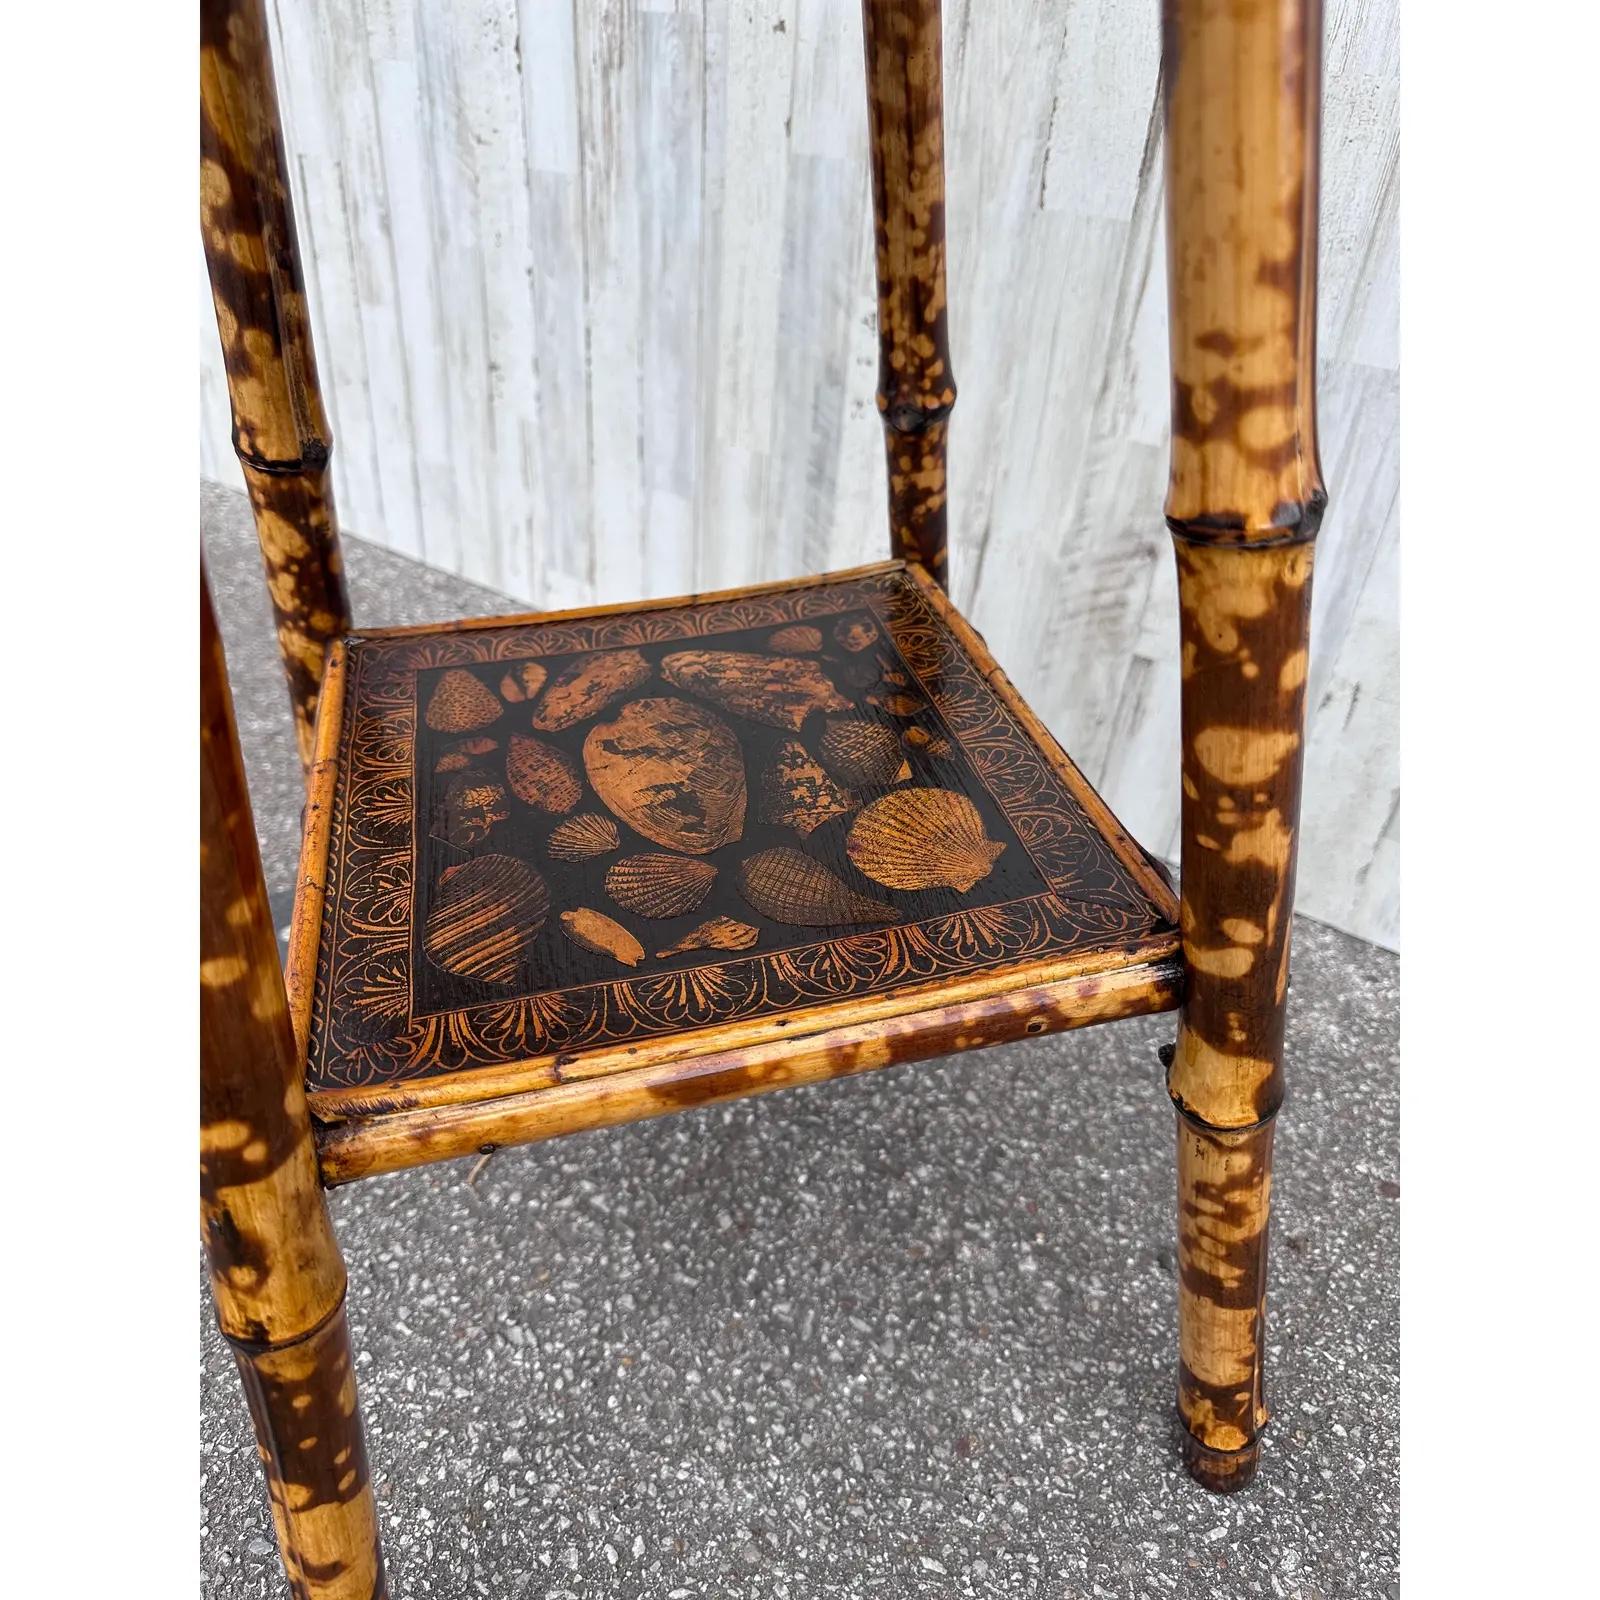 Il s'agit d'une magnifique table d'appoint en bambou anglais du 19e siècle ! Les tables de ce type constituent d'excellentes pièces d'accent, car leur couleur et leur style sont très polyvalents. Les teintes sombres du bambou brûlé se marient